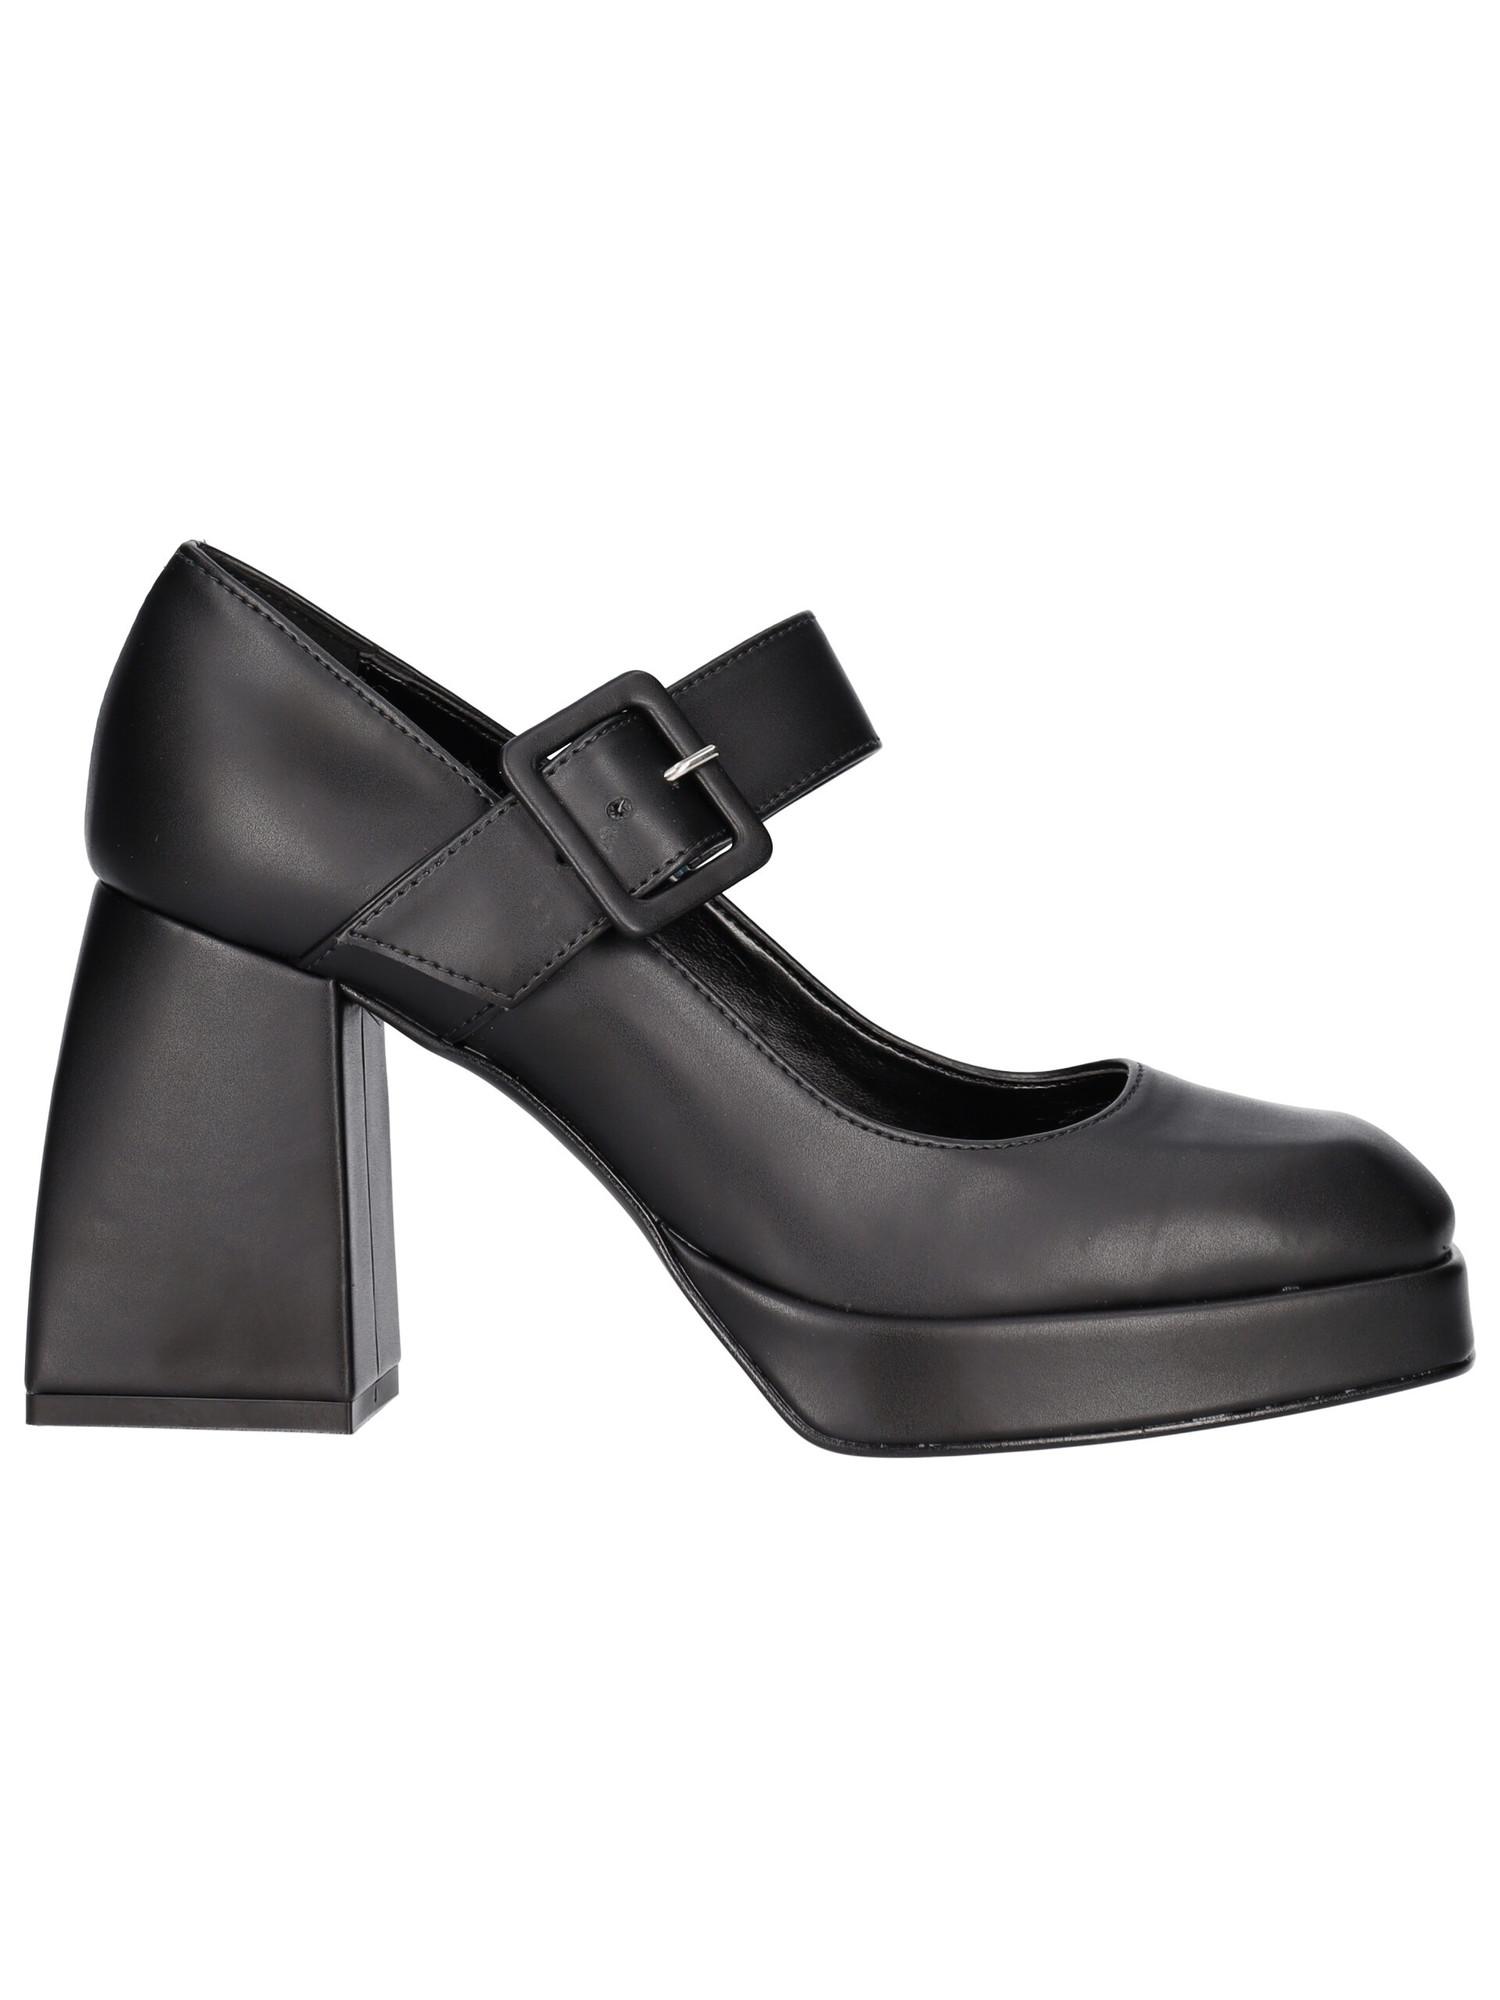 scarpa-con-tacco-largo-liviana-da-donna-nera-e50e96